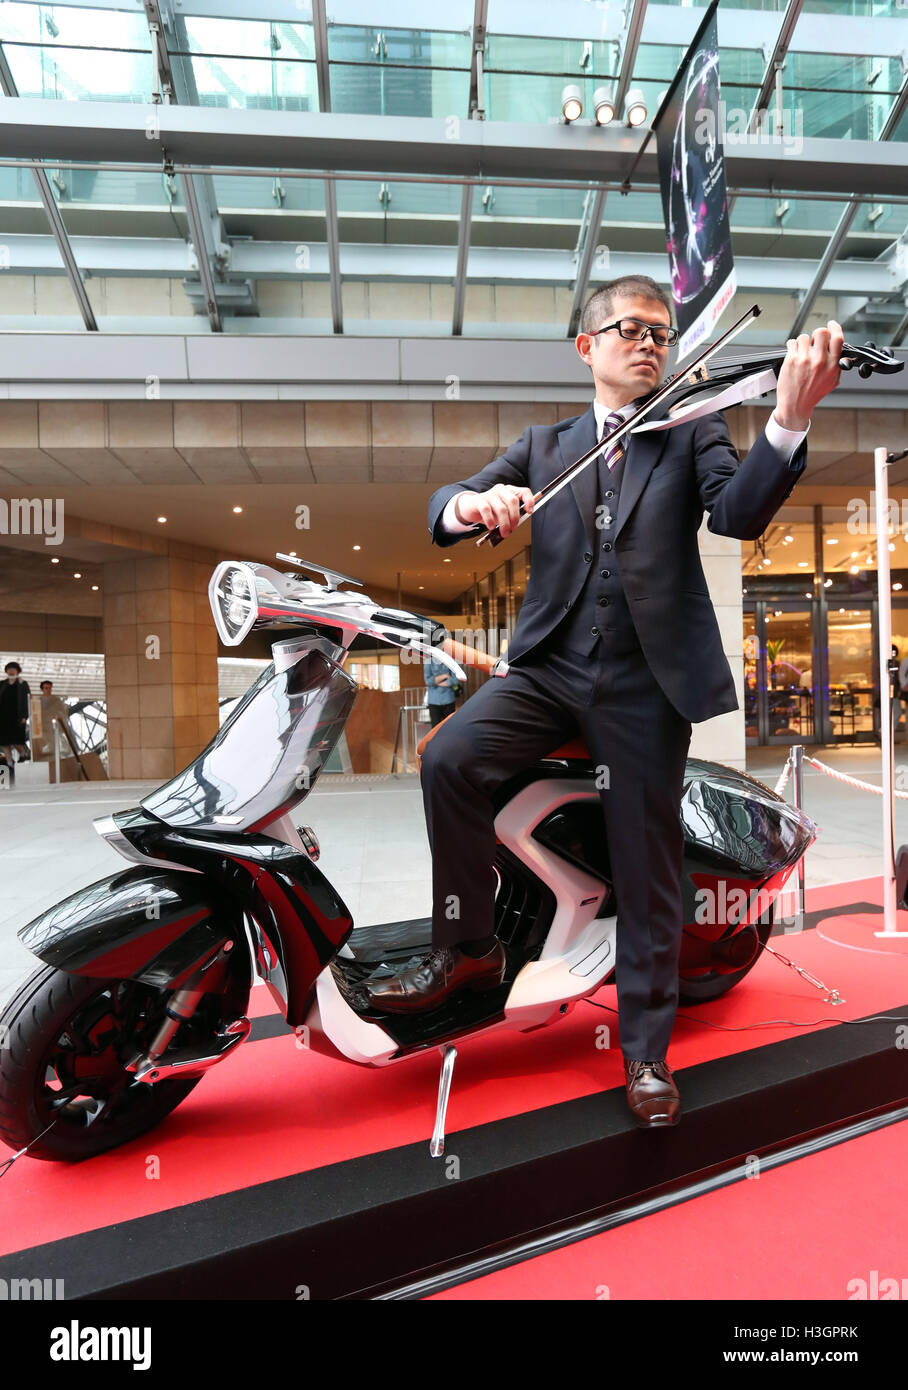 Tokio, Japón - El gigante japonés de instrumentos musicales Yamaha  Corporation empleado desempeña violín eléctrico junto al concepto "scooter  04Gen' en Tokio, el sábado, 8 de octubre de 2016. Instrumento musical  gigante